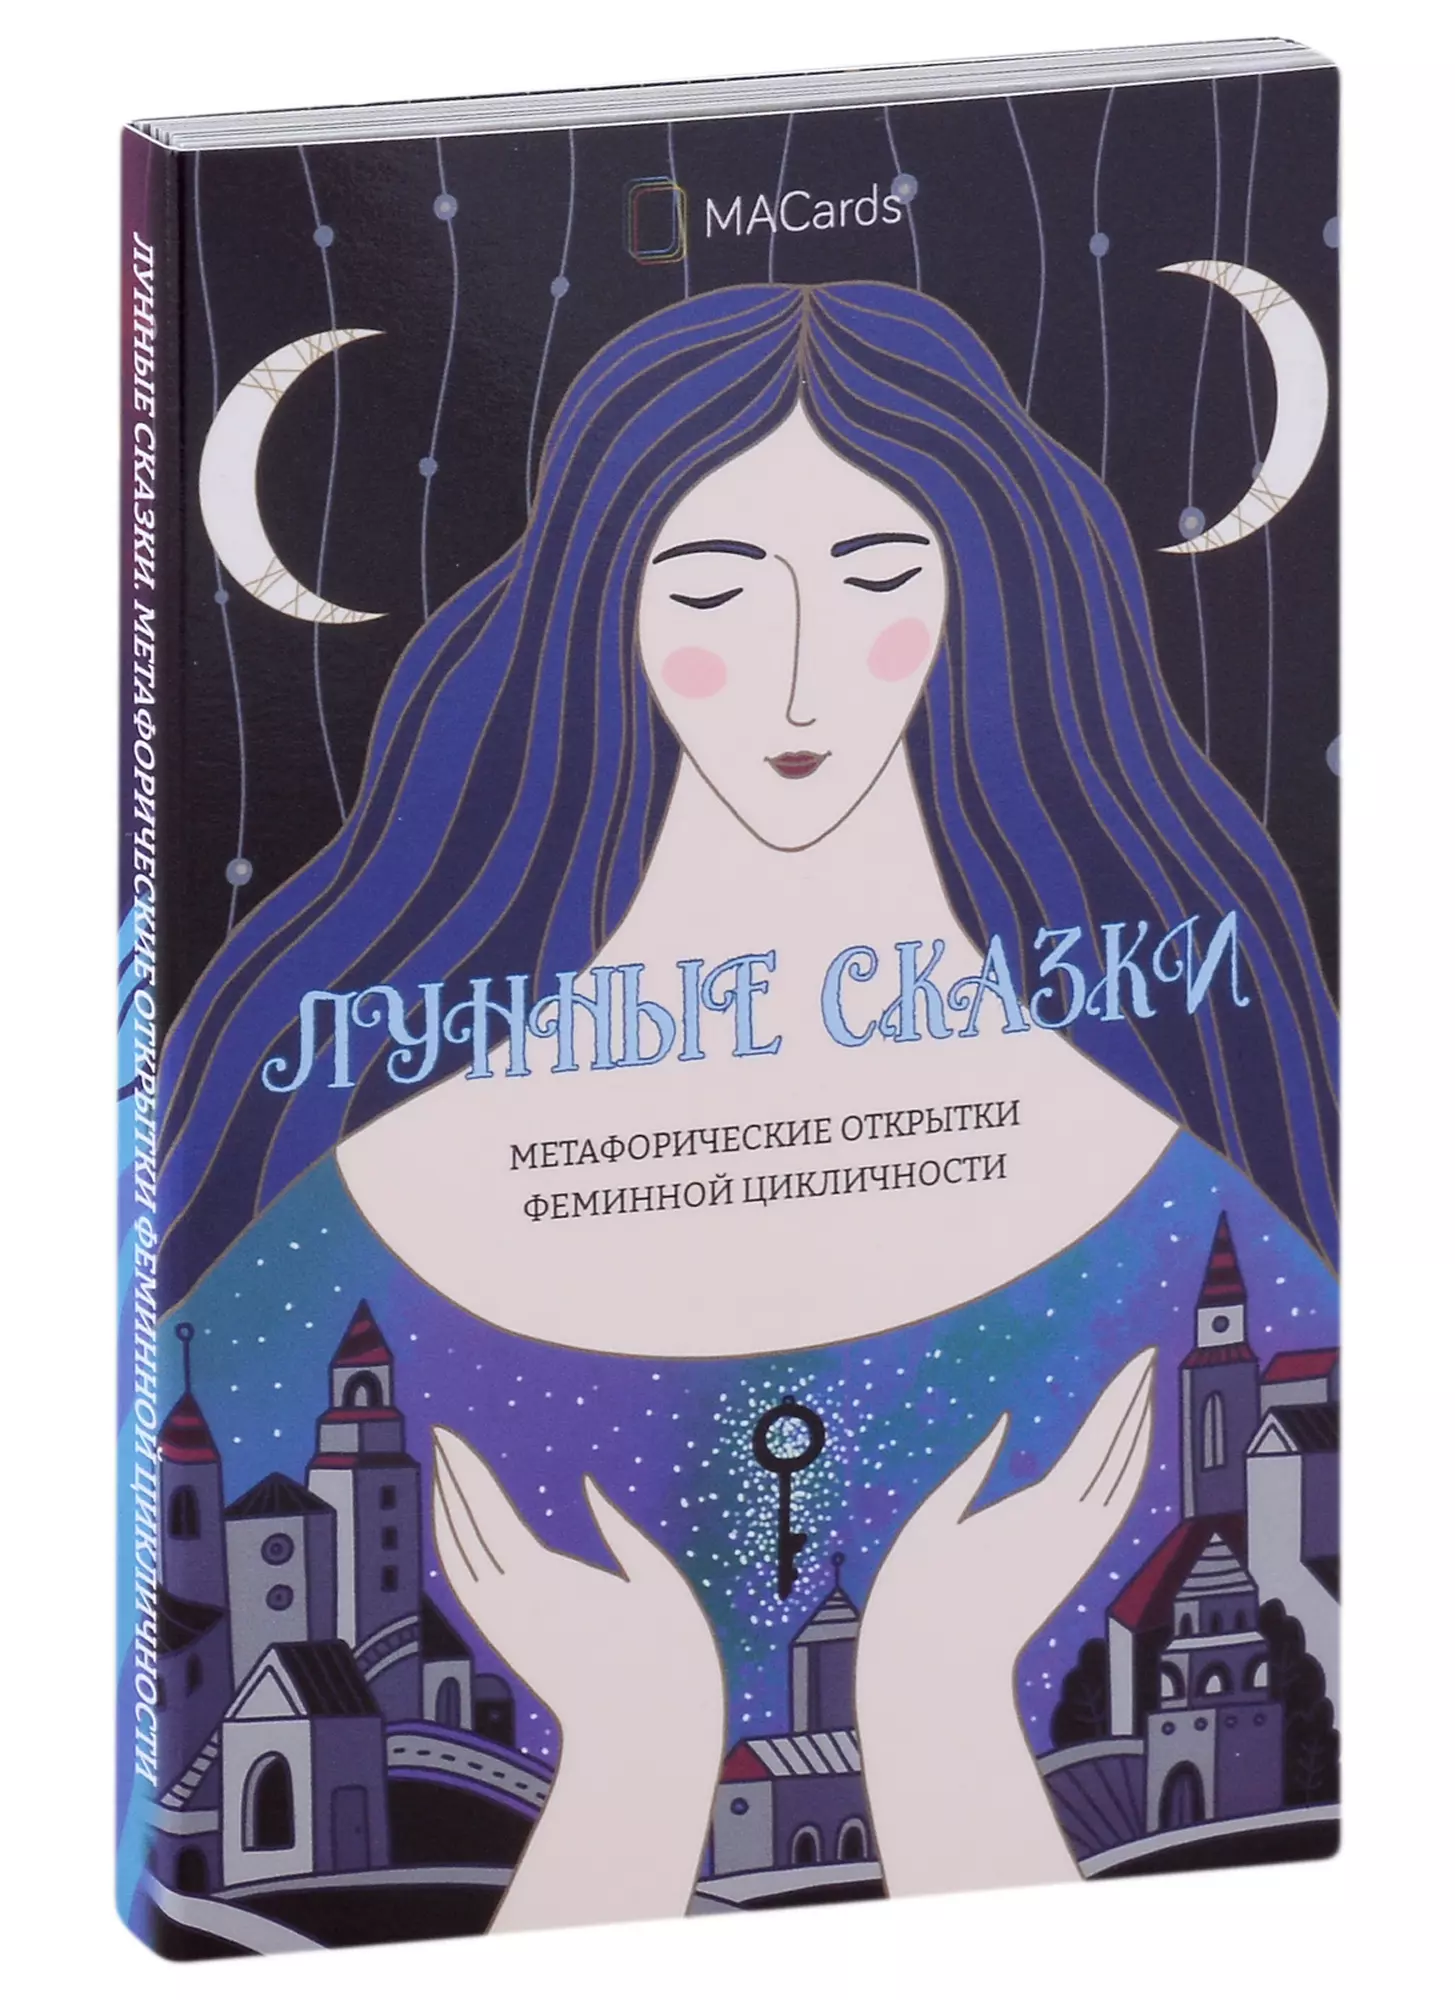 Хомякова Мария Метафорические открытки феминной цикличности «Лунные сказки»